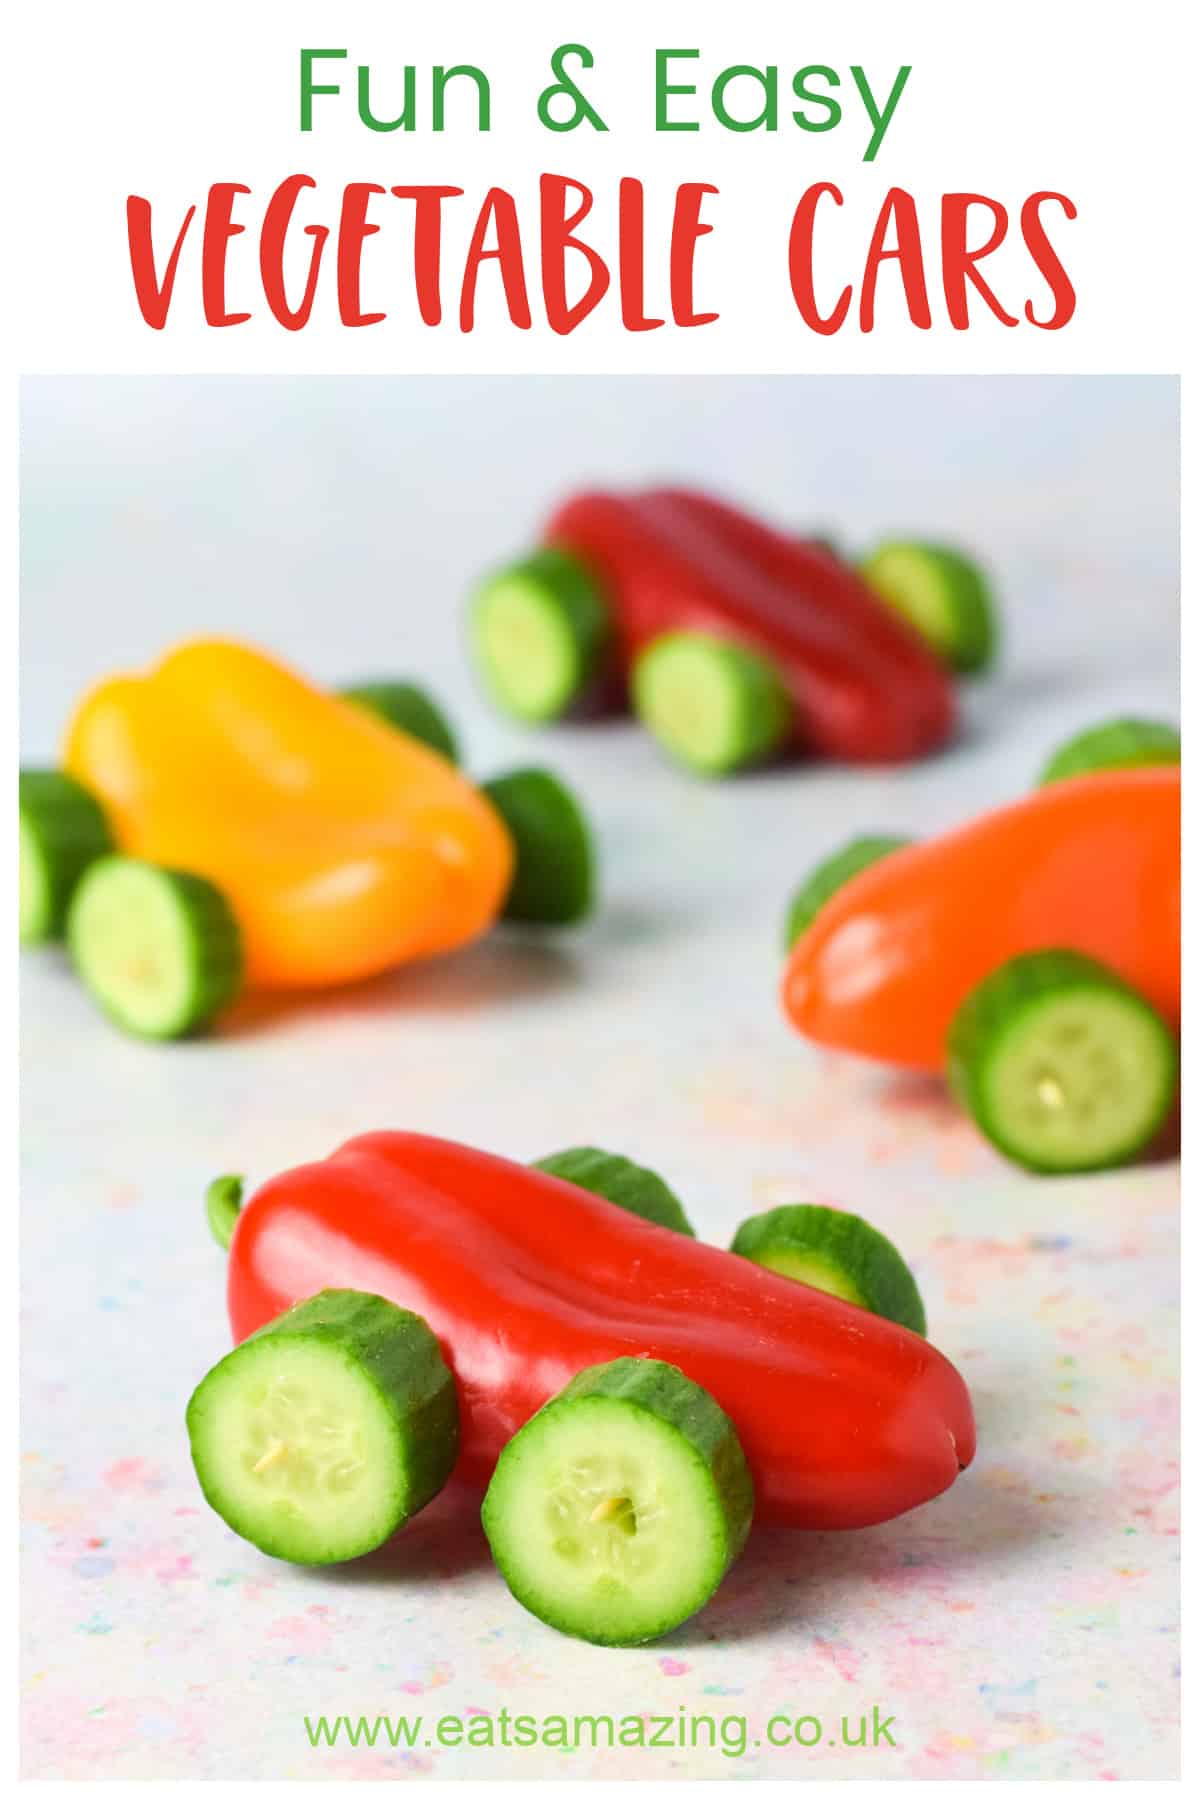 Receta divertida y saludable de carros de vegetales: ideal para comidas de fiestas temáticas de carros o refrigerios escolares para niños